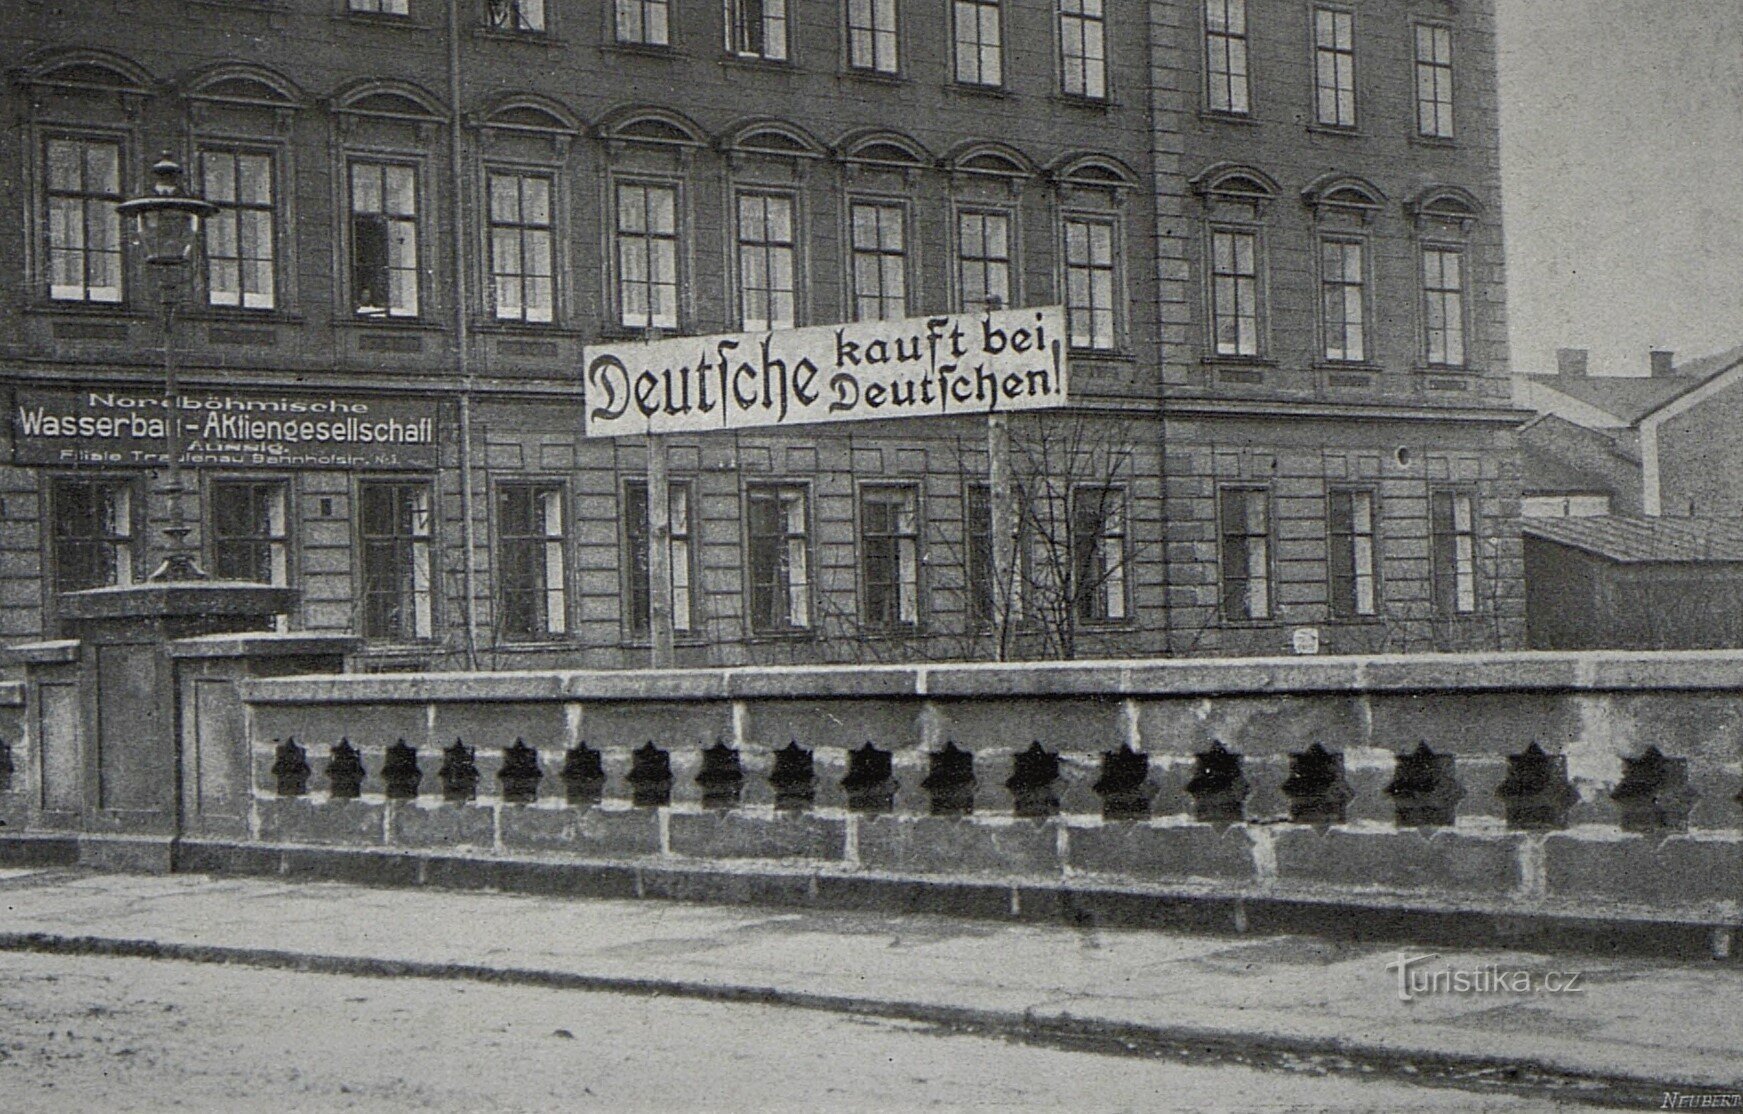 Tyypillinen esimerkki tšekkiläis-saksalaisesta kateudesta vuodelta 1914